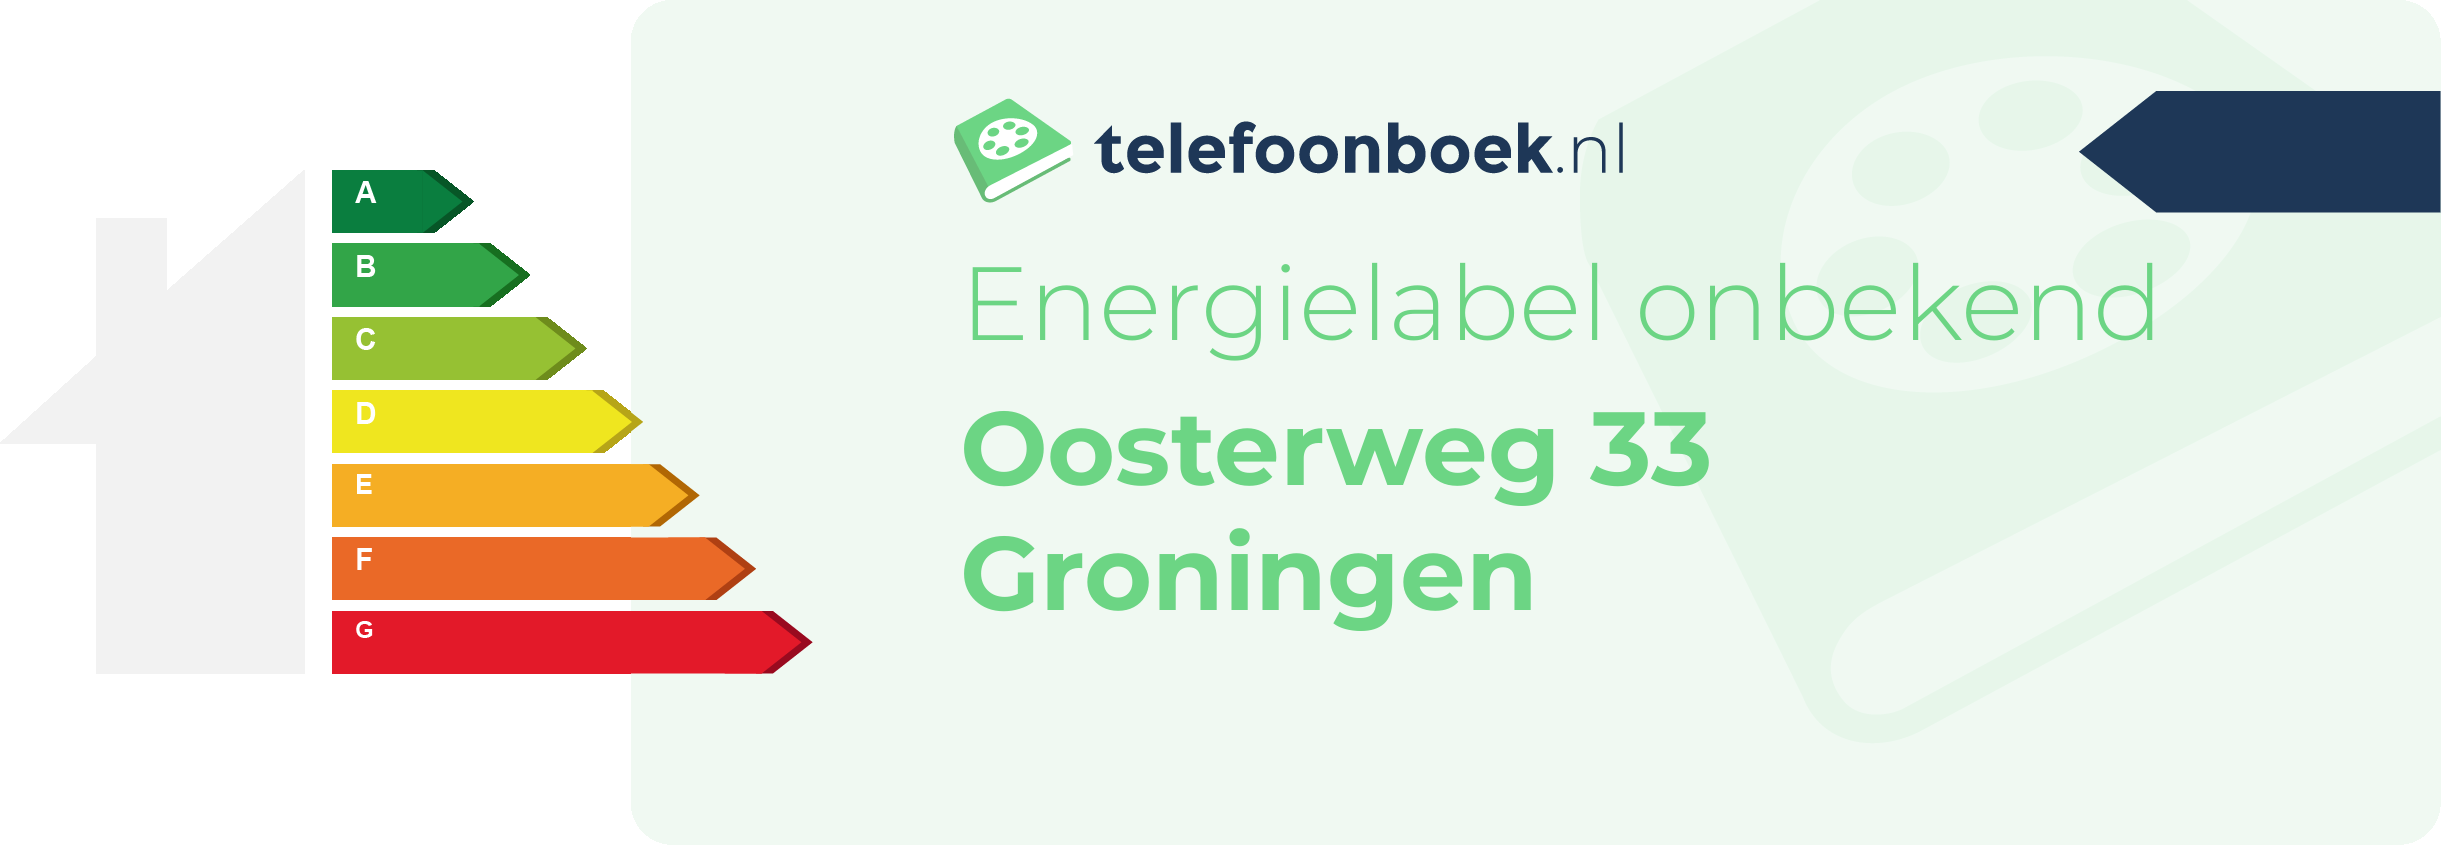 Energielabel Oosterweg 33 Groningen